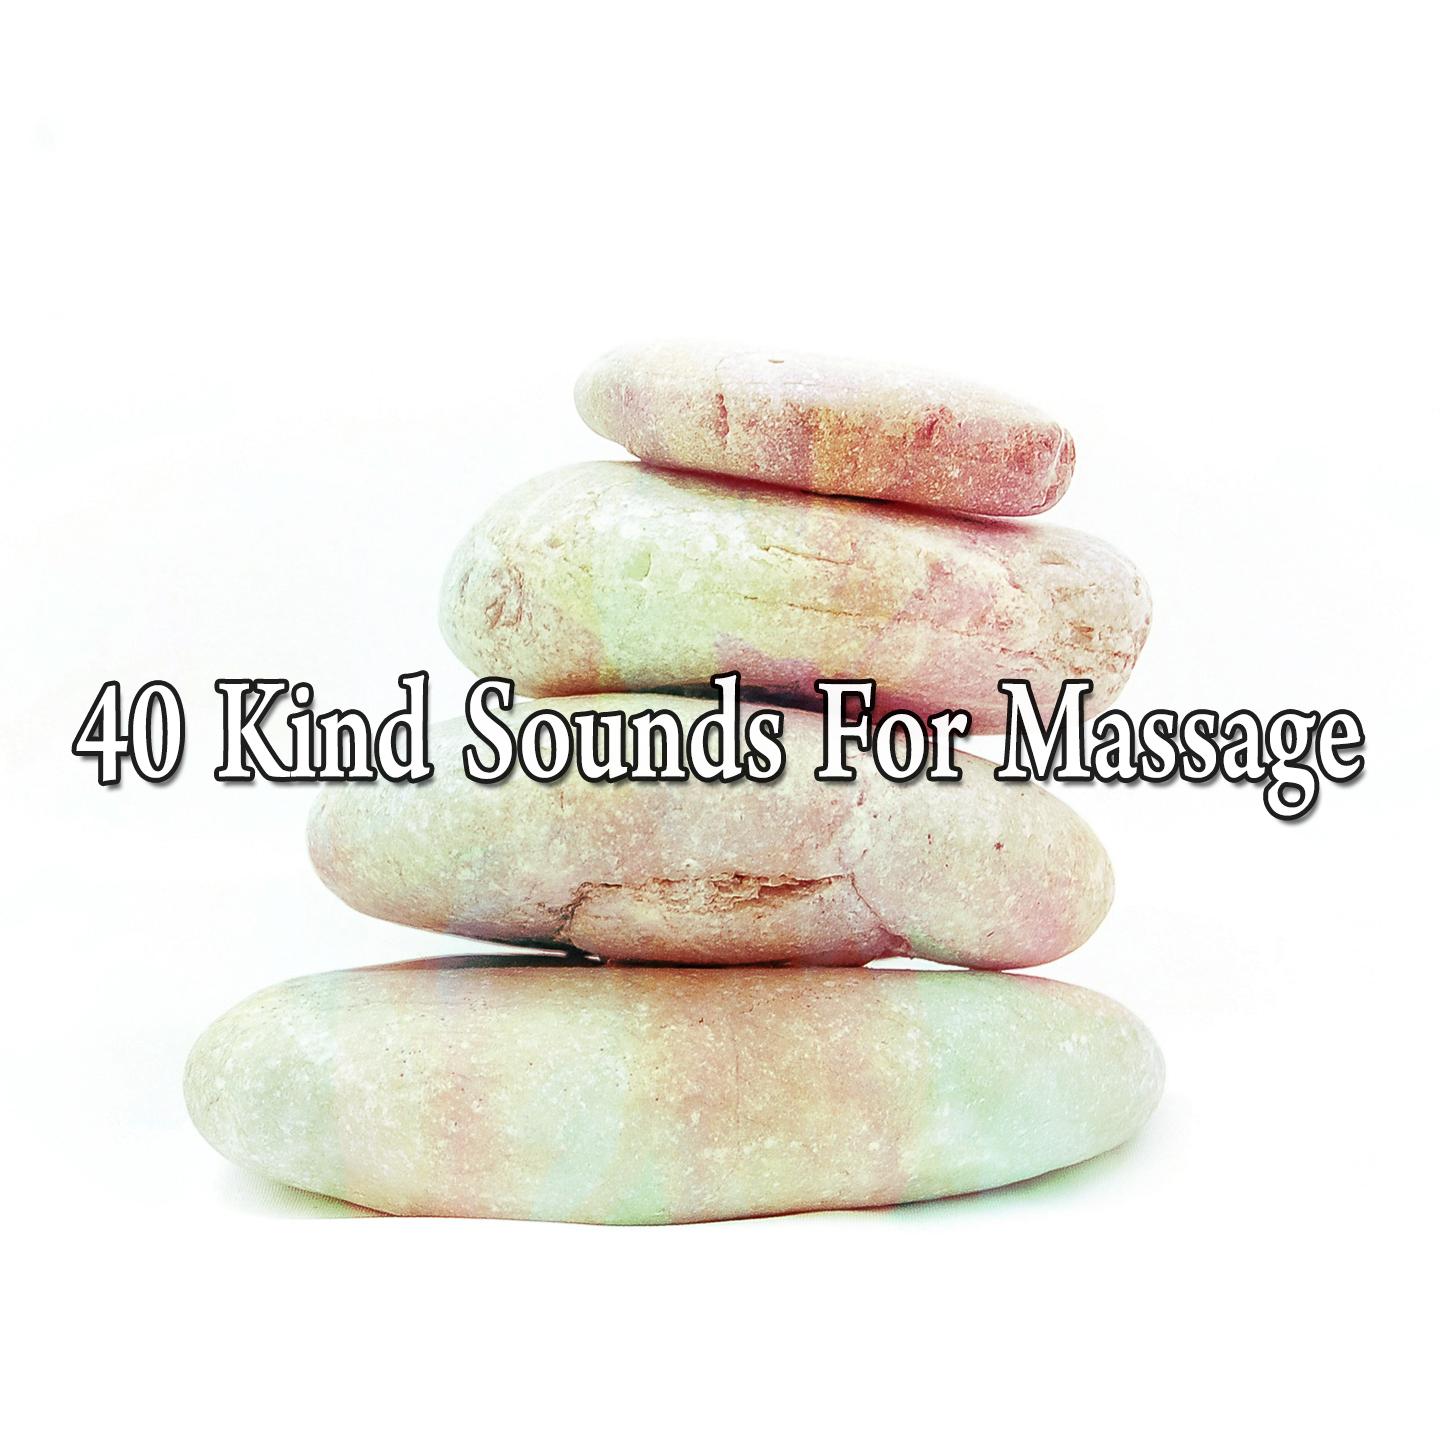 40 Kind Sounds for Massage